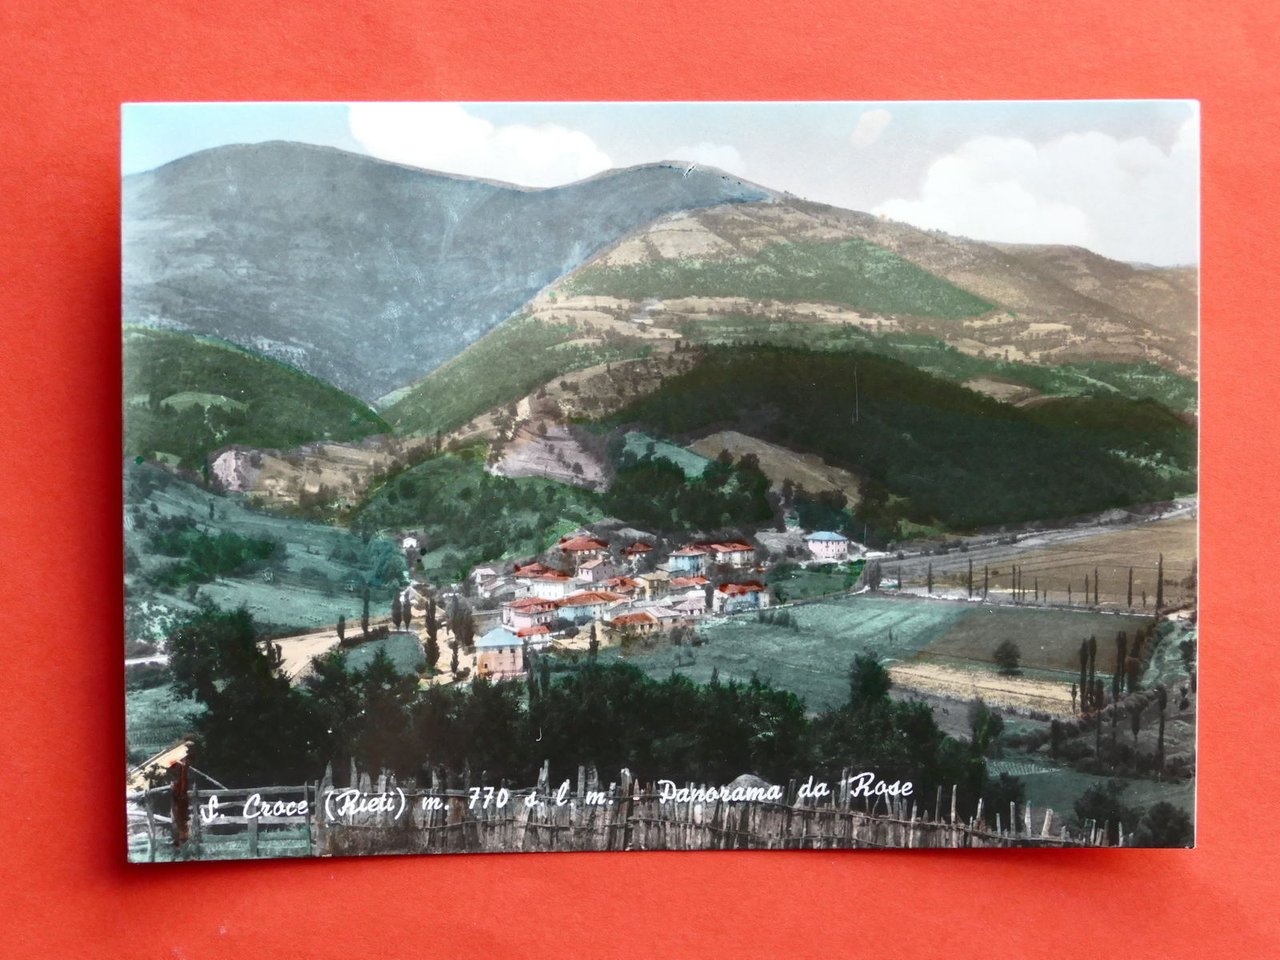 Cartolina S. Croce - Panorama da Rose - 1961.